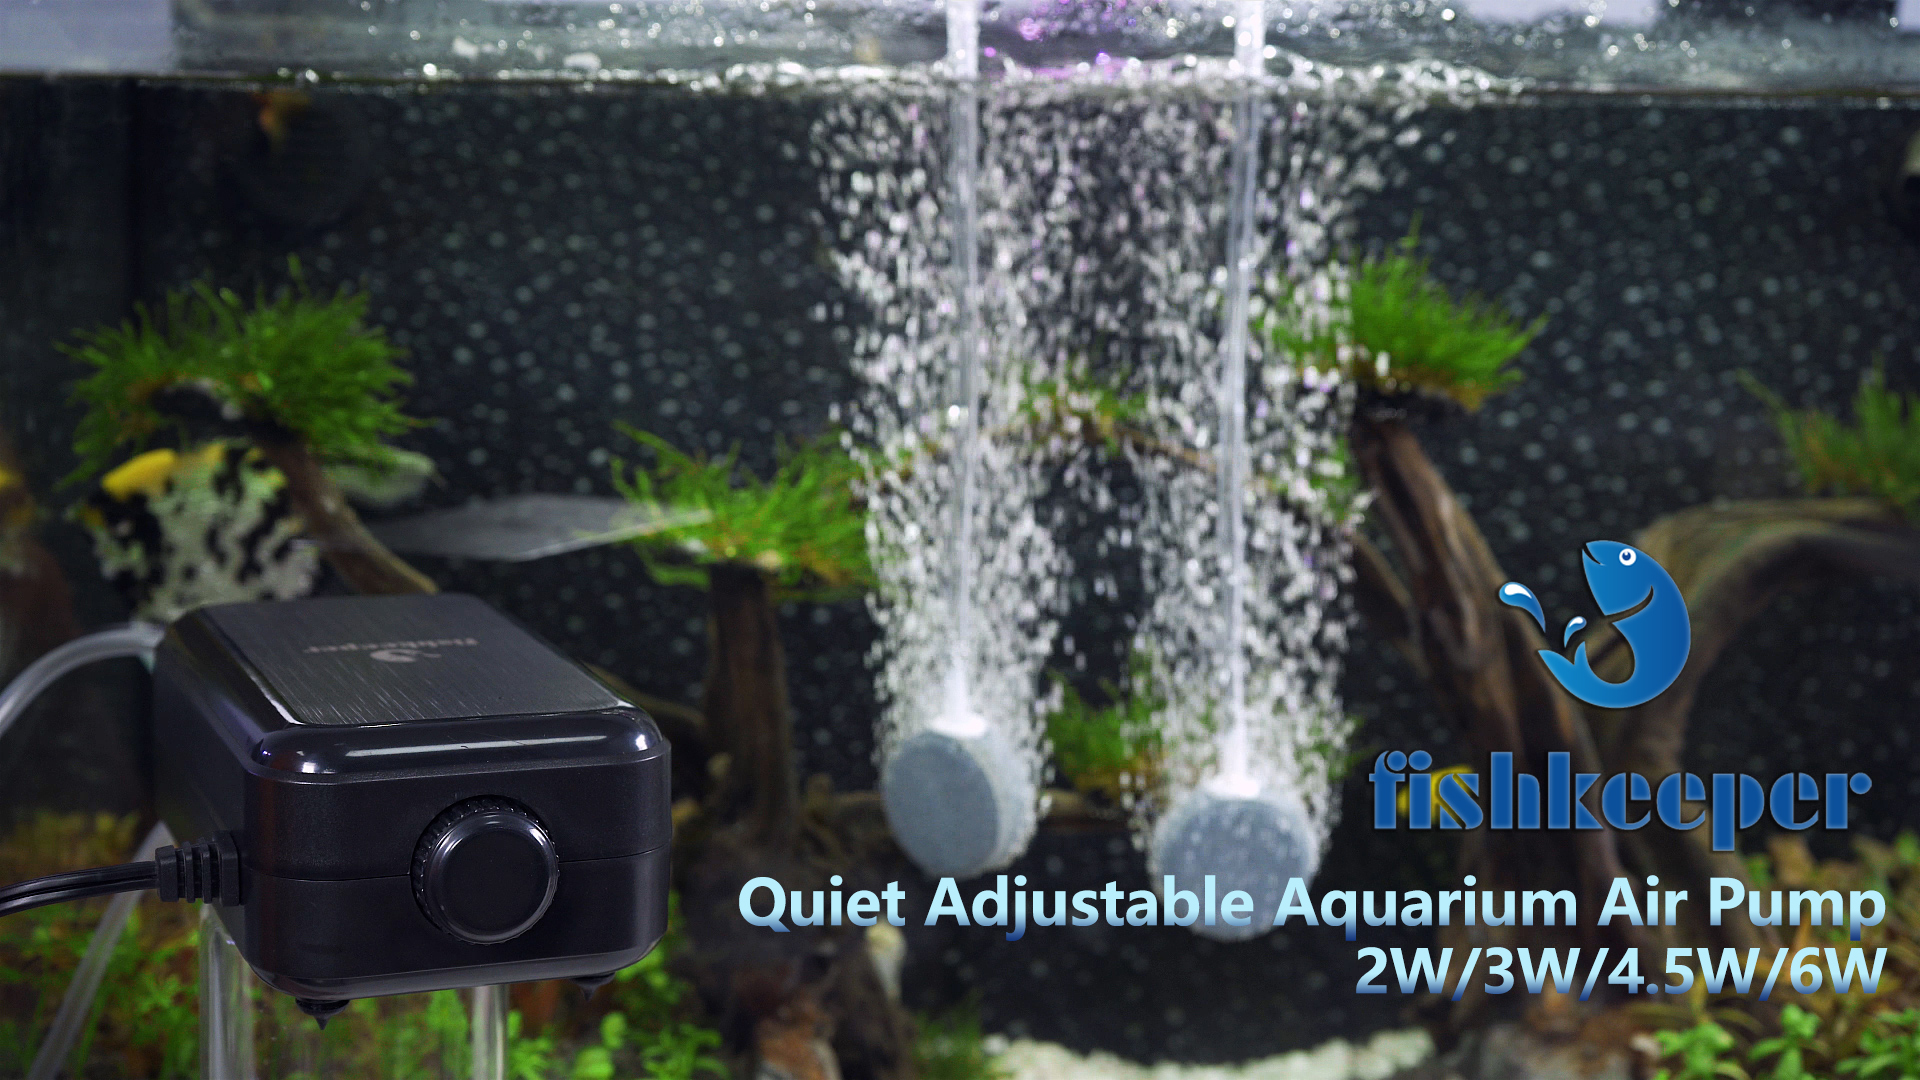 fishkeeper Aquarium Air Pump Ultra Quiet Adjustable Fish Tank Aerator